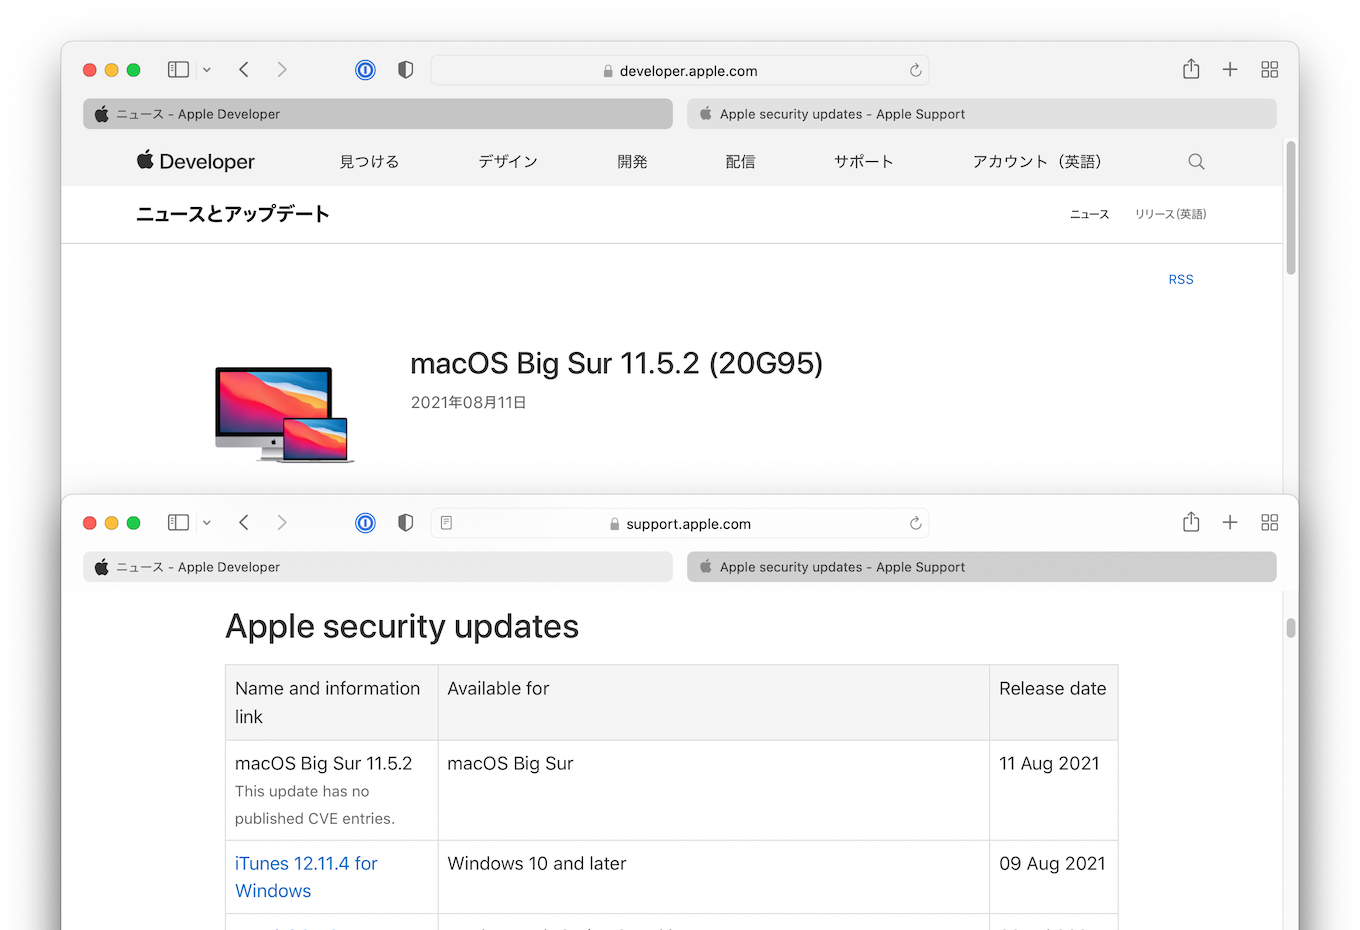 macOS Big Sur 11.5.2 Build 20G95